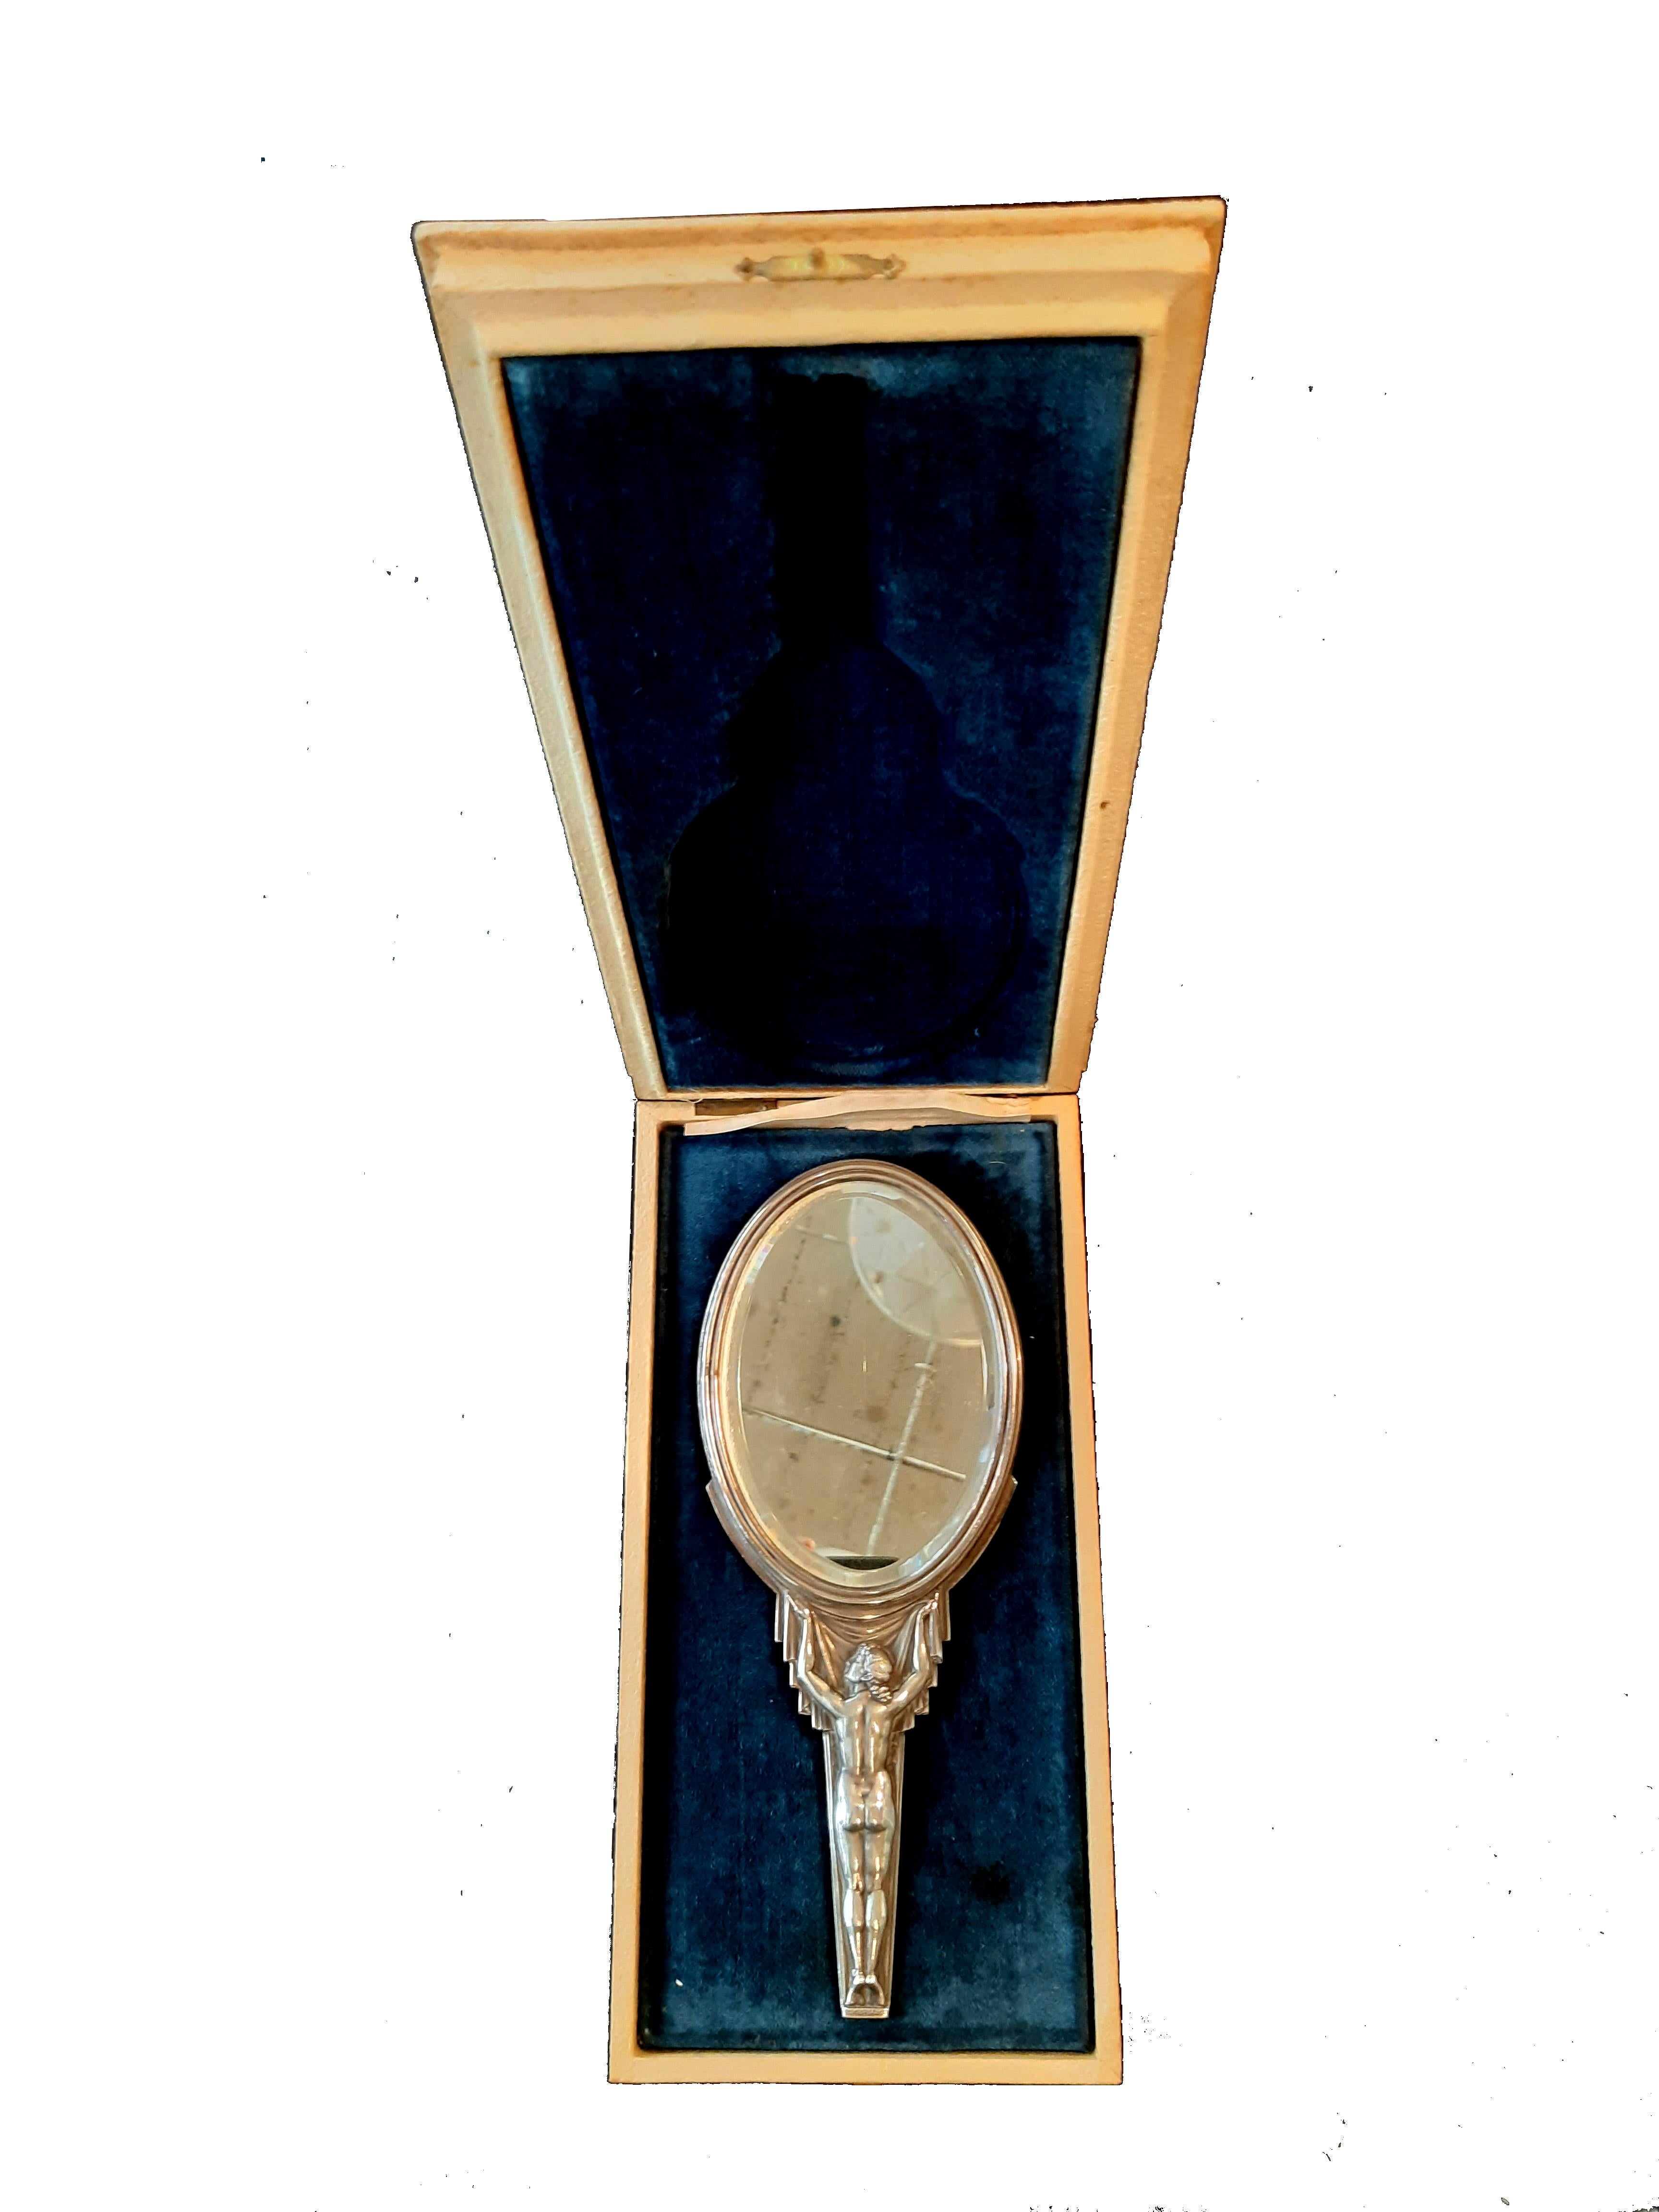 Schwerer Handspiegel 2-seitig LUCIEN BAZOR Bronze versilbert 

Frankreich, Jugedstil / Art Déco um 1925, Größe 24,5cm, zweiseitig (identische Seiten), Bronze versilbert, in Original-Etui.

